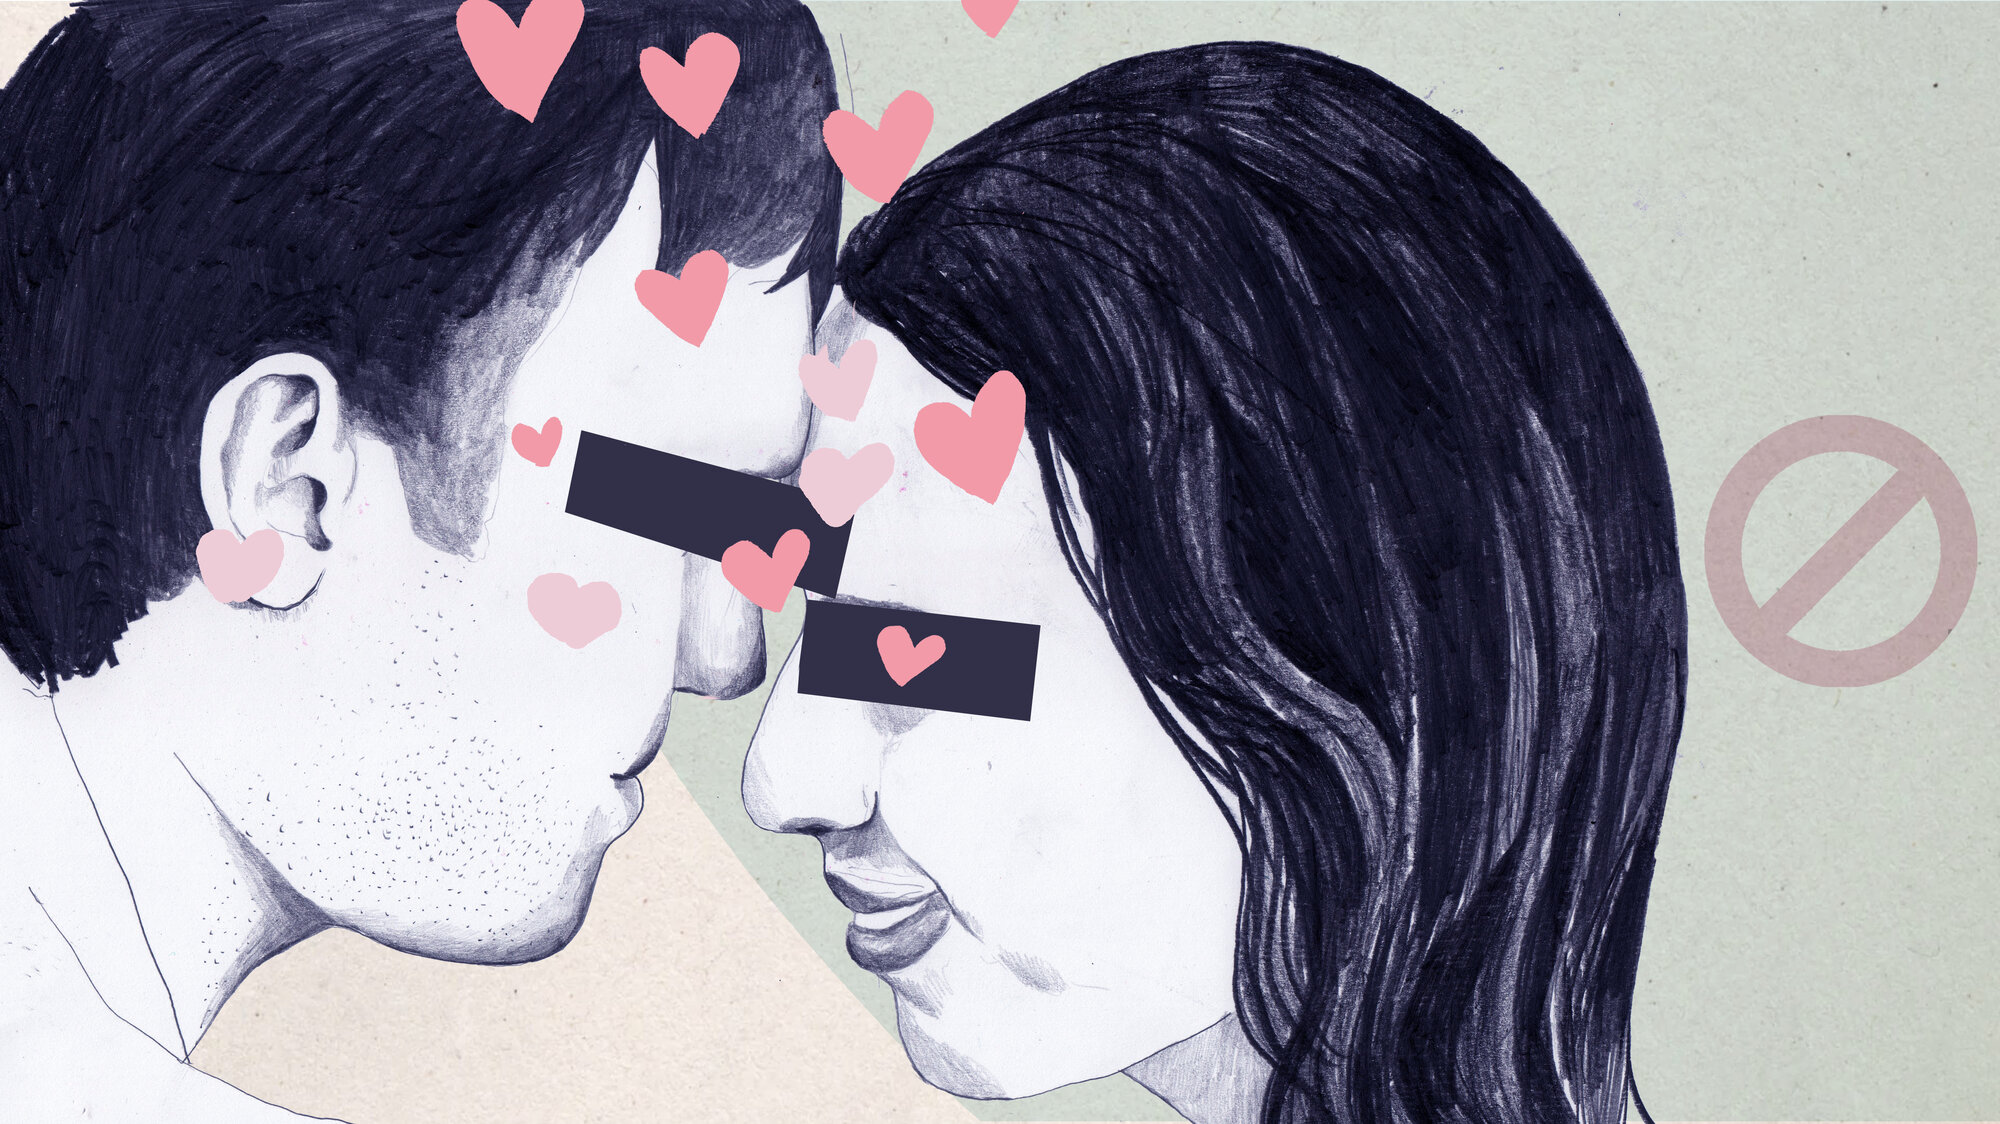 Illustrasjonen viser en mann og en kvinne som står med ansiktene mot hverandre, klare for et kyss. De har et svart felt over øynene, og det er et dryss av hjerter over illustrasjonen. Et forbundttegn synes.